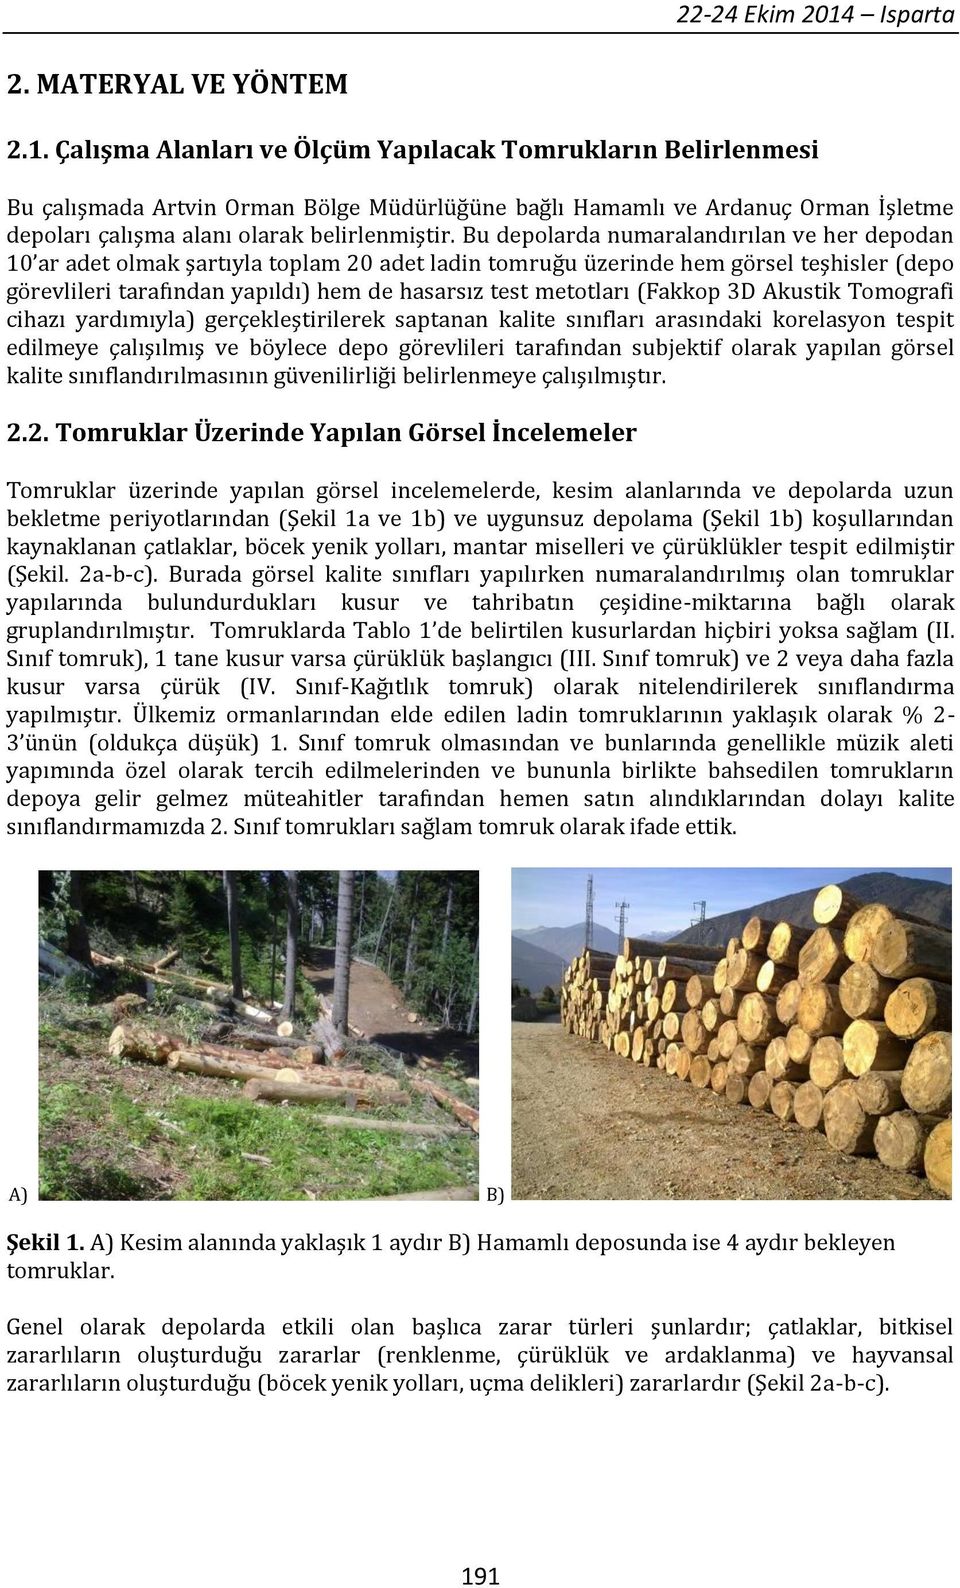 Çalışma Alanları ve Ölçüm Yapılacak Tomrukların Belirlenmesi Bu çalışmada Artvin Orman Bölge Müdürlüğüne bağlı Hamamlı ve Ardanuç Orman İşletme depoları çalışma alanı olarak belirlenmiştir.